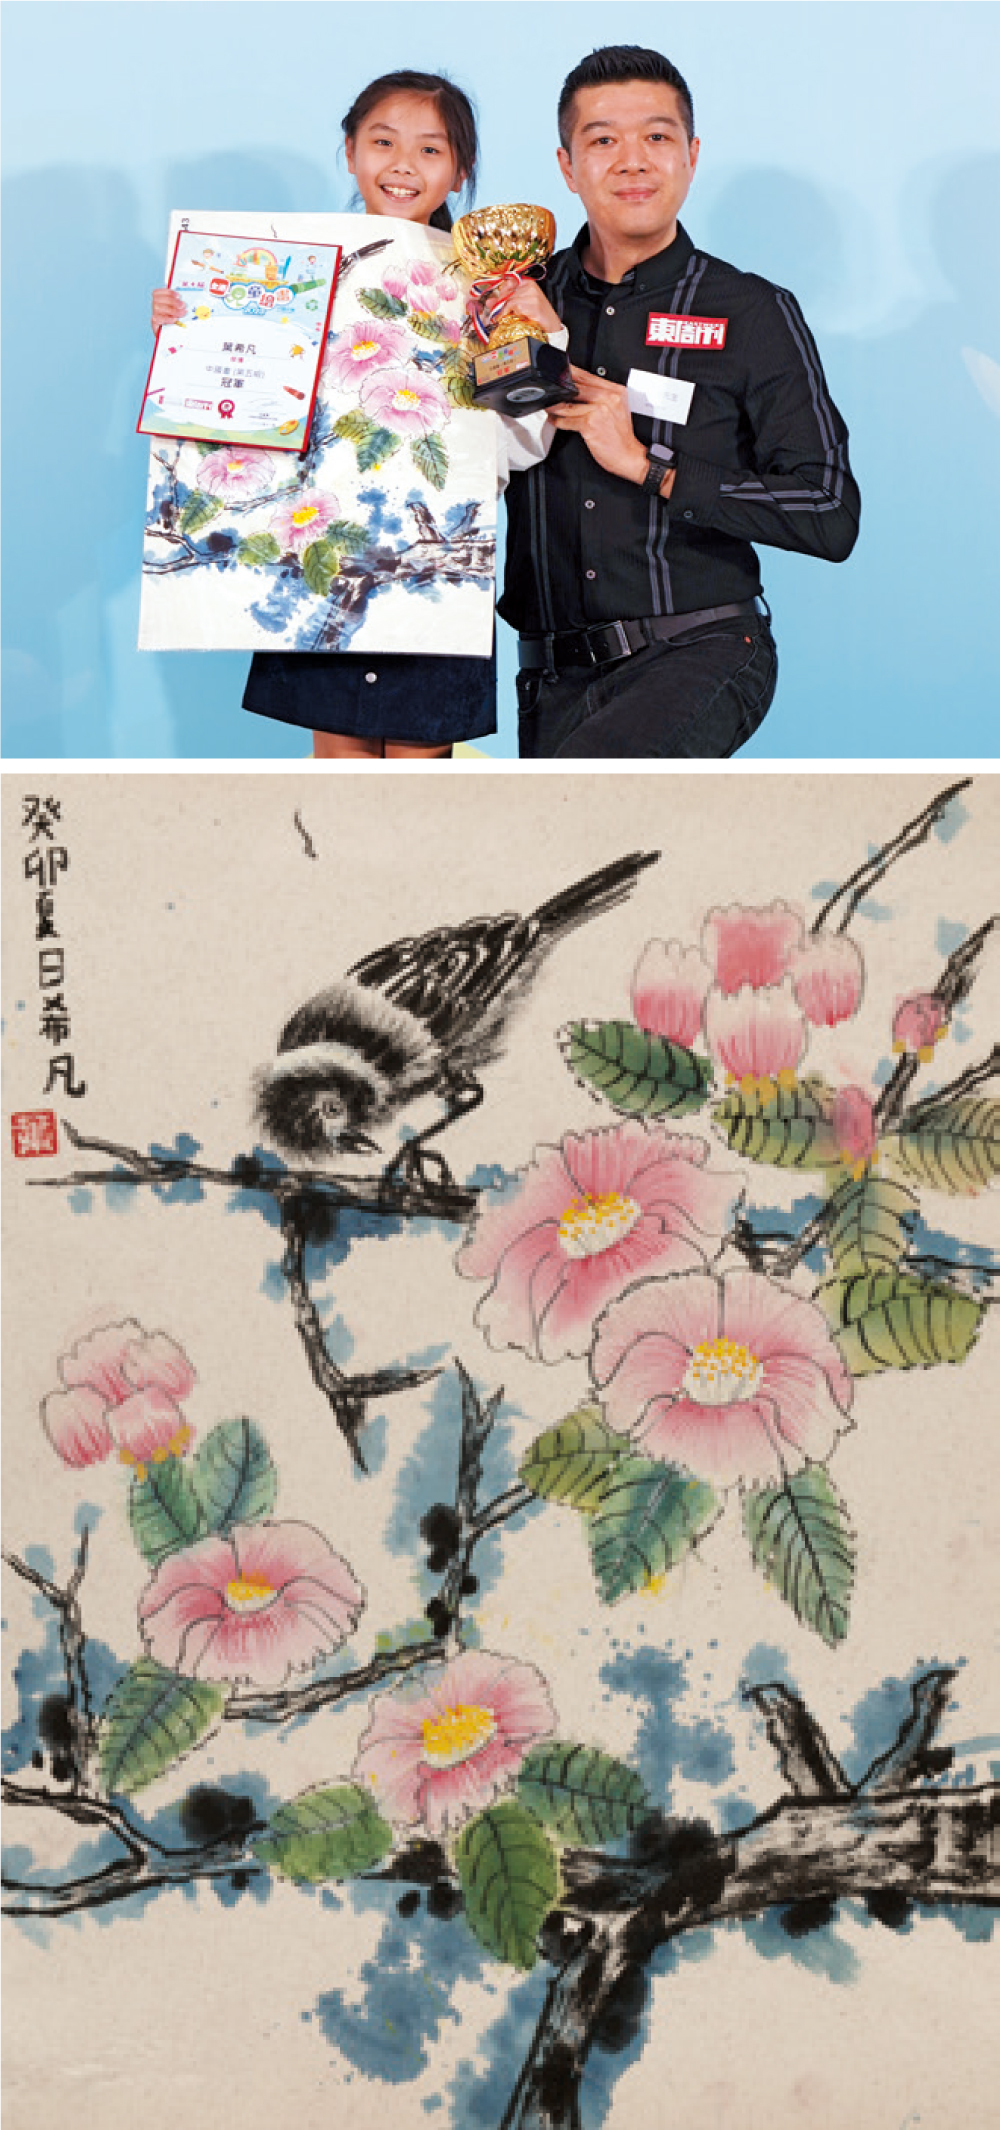 冠軍 葉希凡 - 學了三年西洋畫，近半年才接觸中國畫的希凡，初次參賽便以這幅無論構圖、用色皆贏得評審歡心的畫作獲獎。